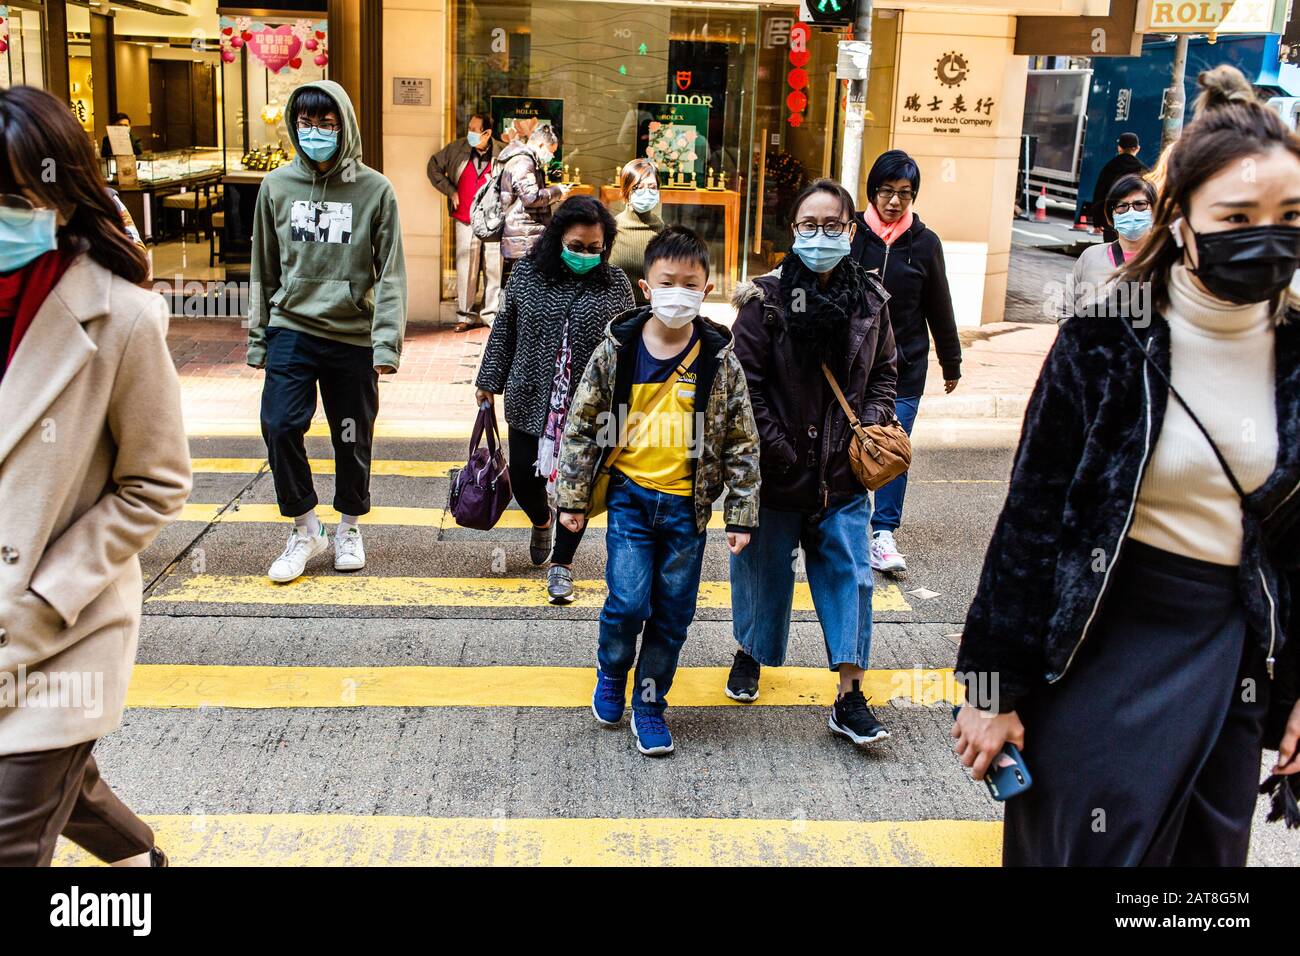 Hong Kong, Cina. 31st Gen 2020. Le persone che indossano maschere facciali come precauzione per lo scoppio di Coronavirus a Hong Kong. Alla luce di un focolaio di coronavirus a Hong Kong i cittadini indossavano maschere facciali per timore di contrarre l'influenza. A causa del panico diffuso e delle scarse forniture, i cittadini sono stati messi in coda per acquistare maschere facciali e igienizzatori per le mani. Credit: Willie Siau/Sopa Images/Zuma Wire/Alamy Live News Foto Stock